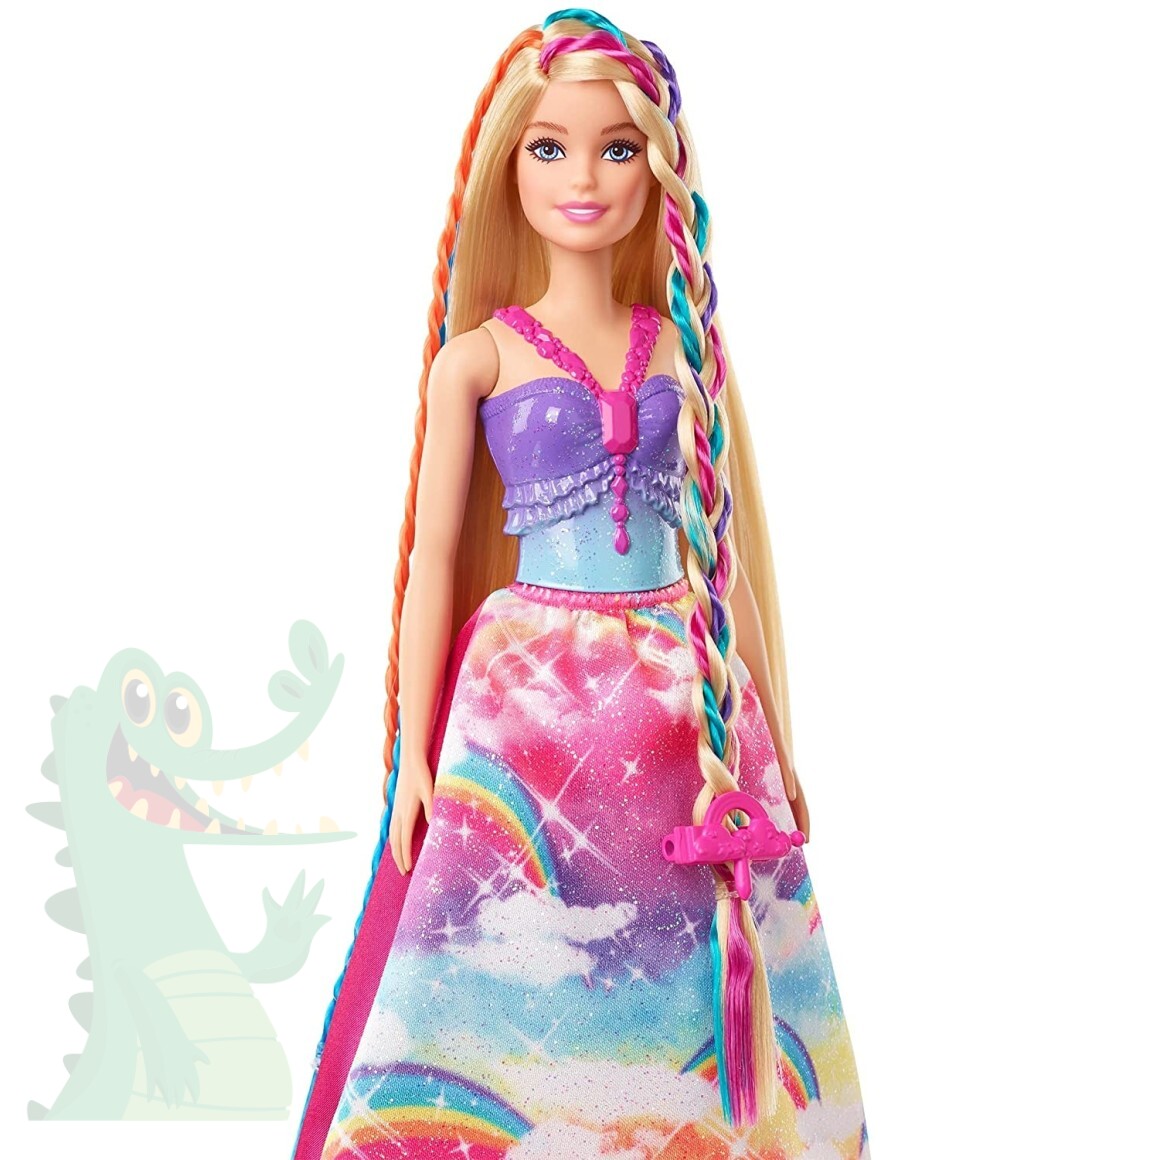 Look Infantil Inspiração Barbie 3 Peças: Top + Saia + Bolsinha com